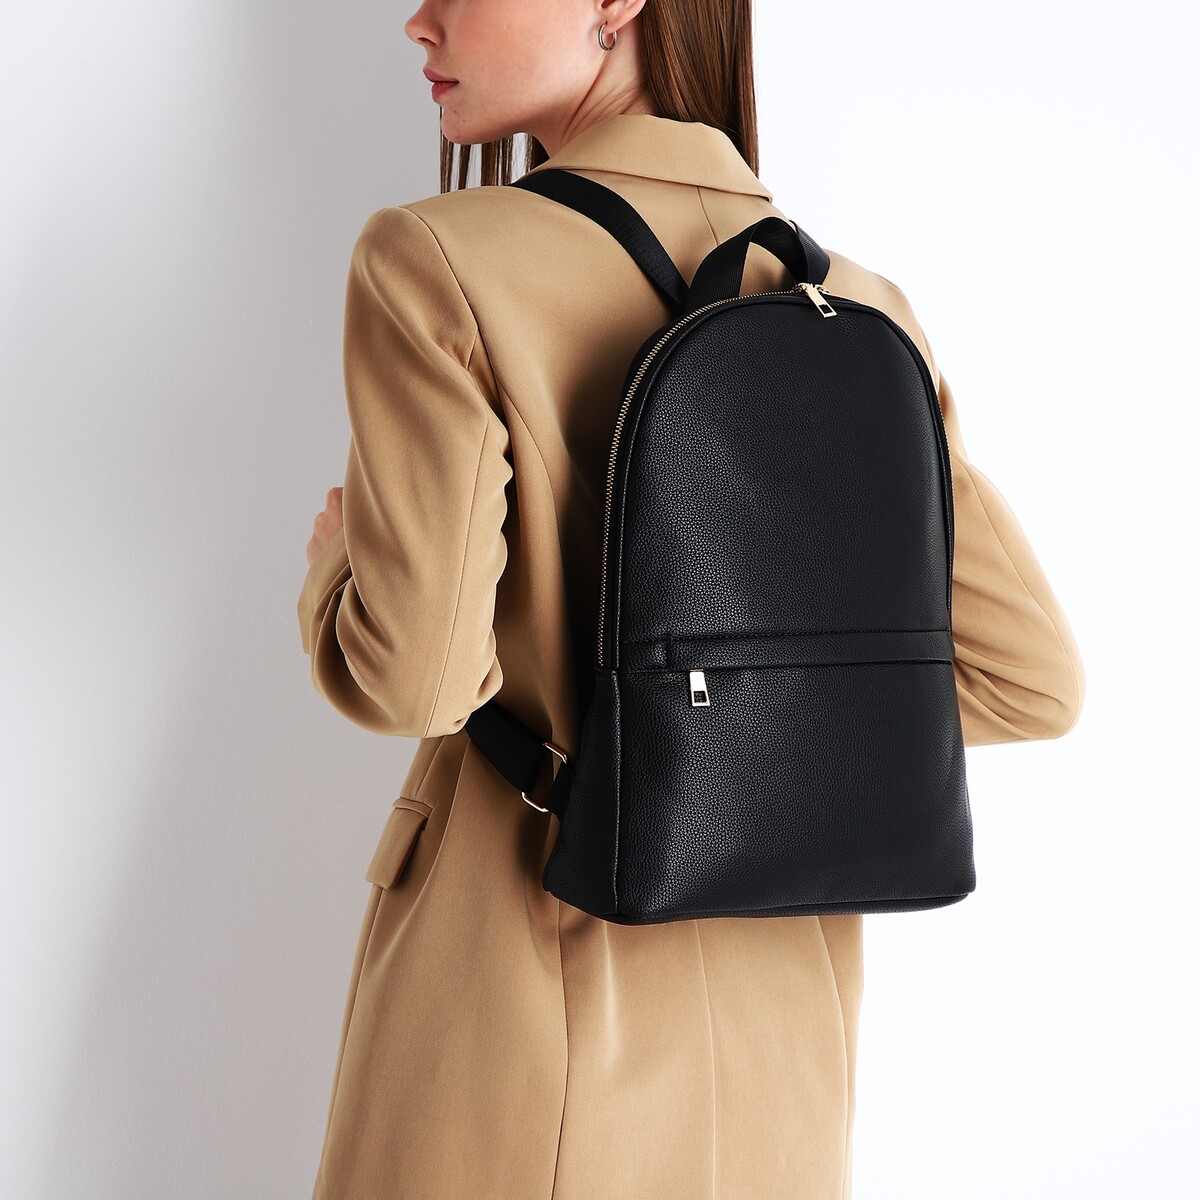 Рюкзак женский из искусственной кожи на молнии, 2 кармана, цвет черный рюкзак молодежный из искусственной кожи на молнии 4 кармана